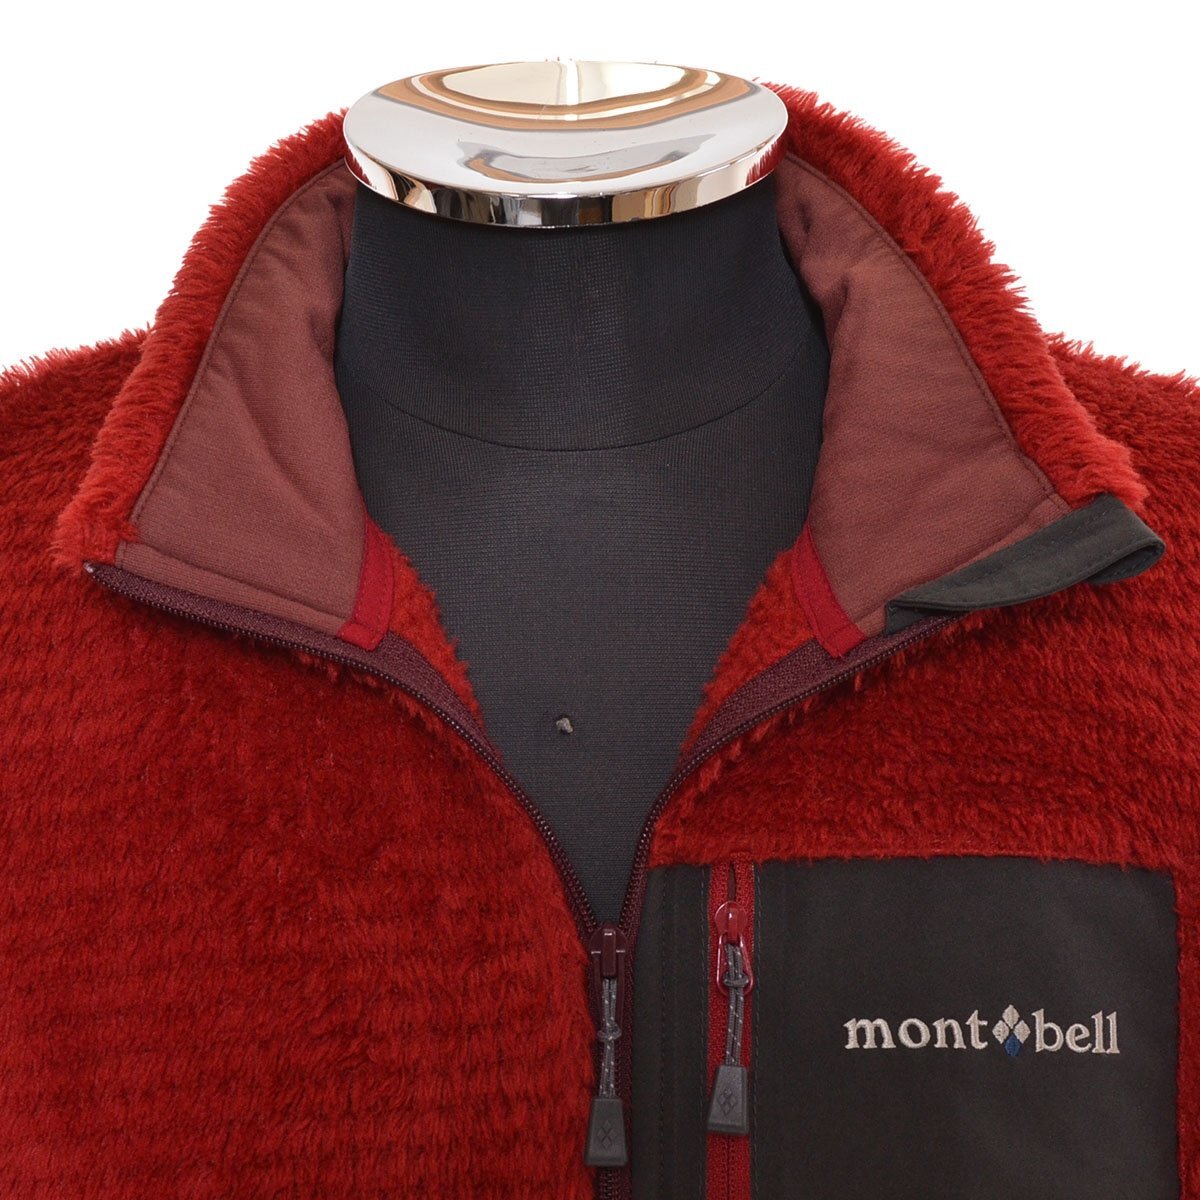 ◆504333 mont-bell モンベル ◆フリースジャケット クリマエア ジャケット 1106660 サイズM メンズ レッド_画像3